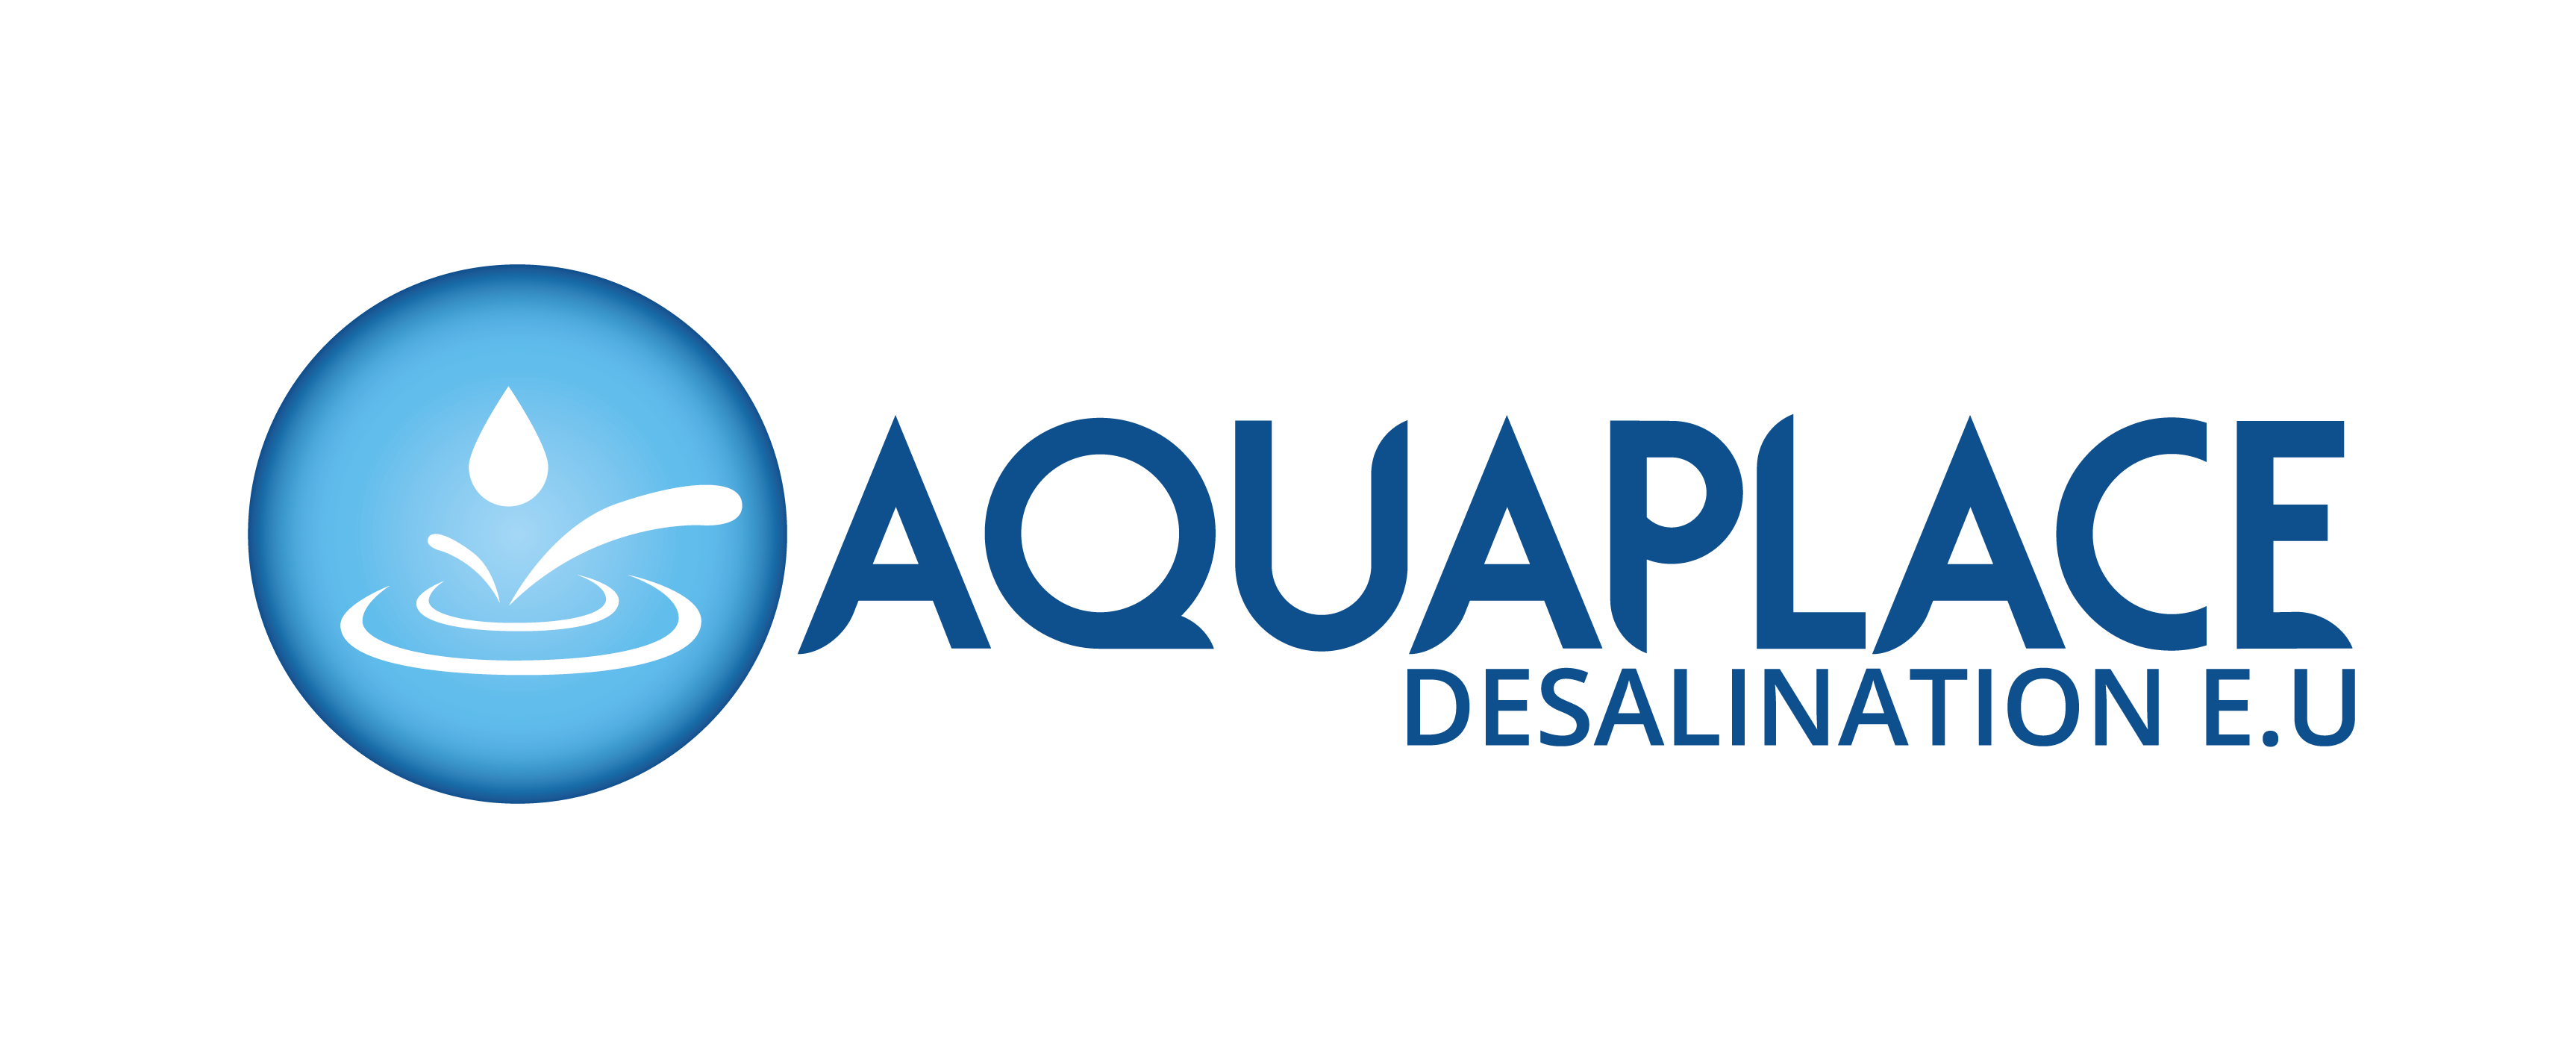 Aquaplace Desalination S.A.S